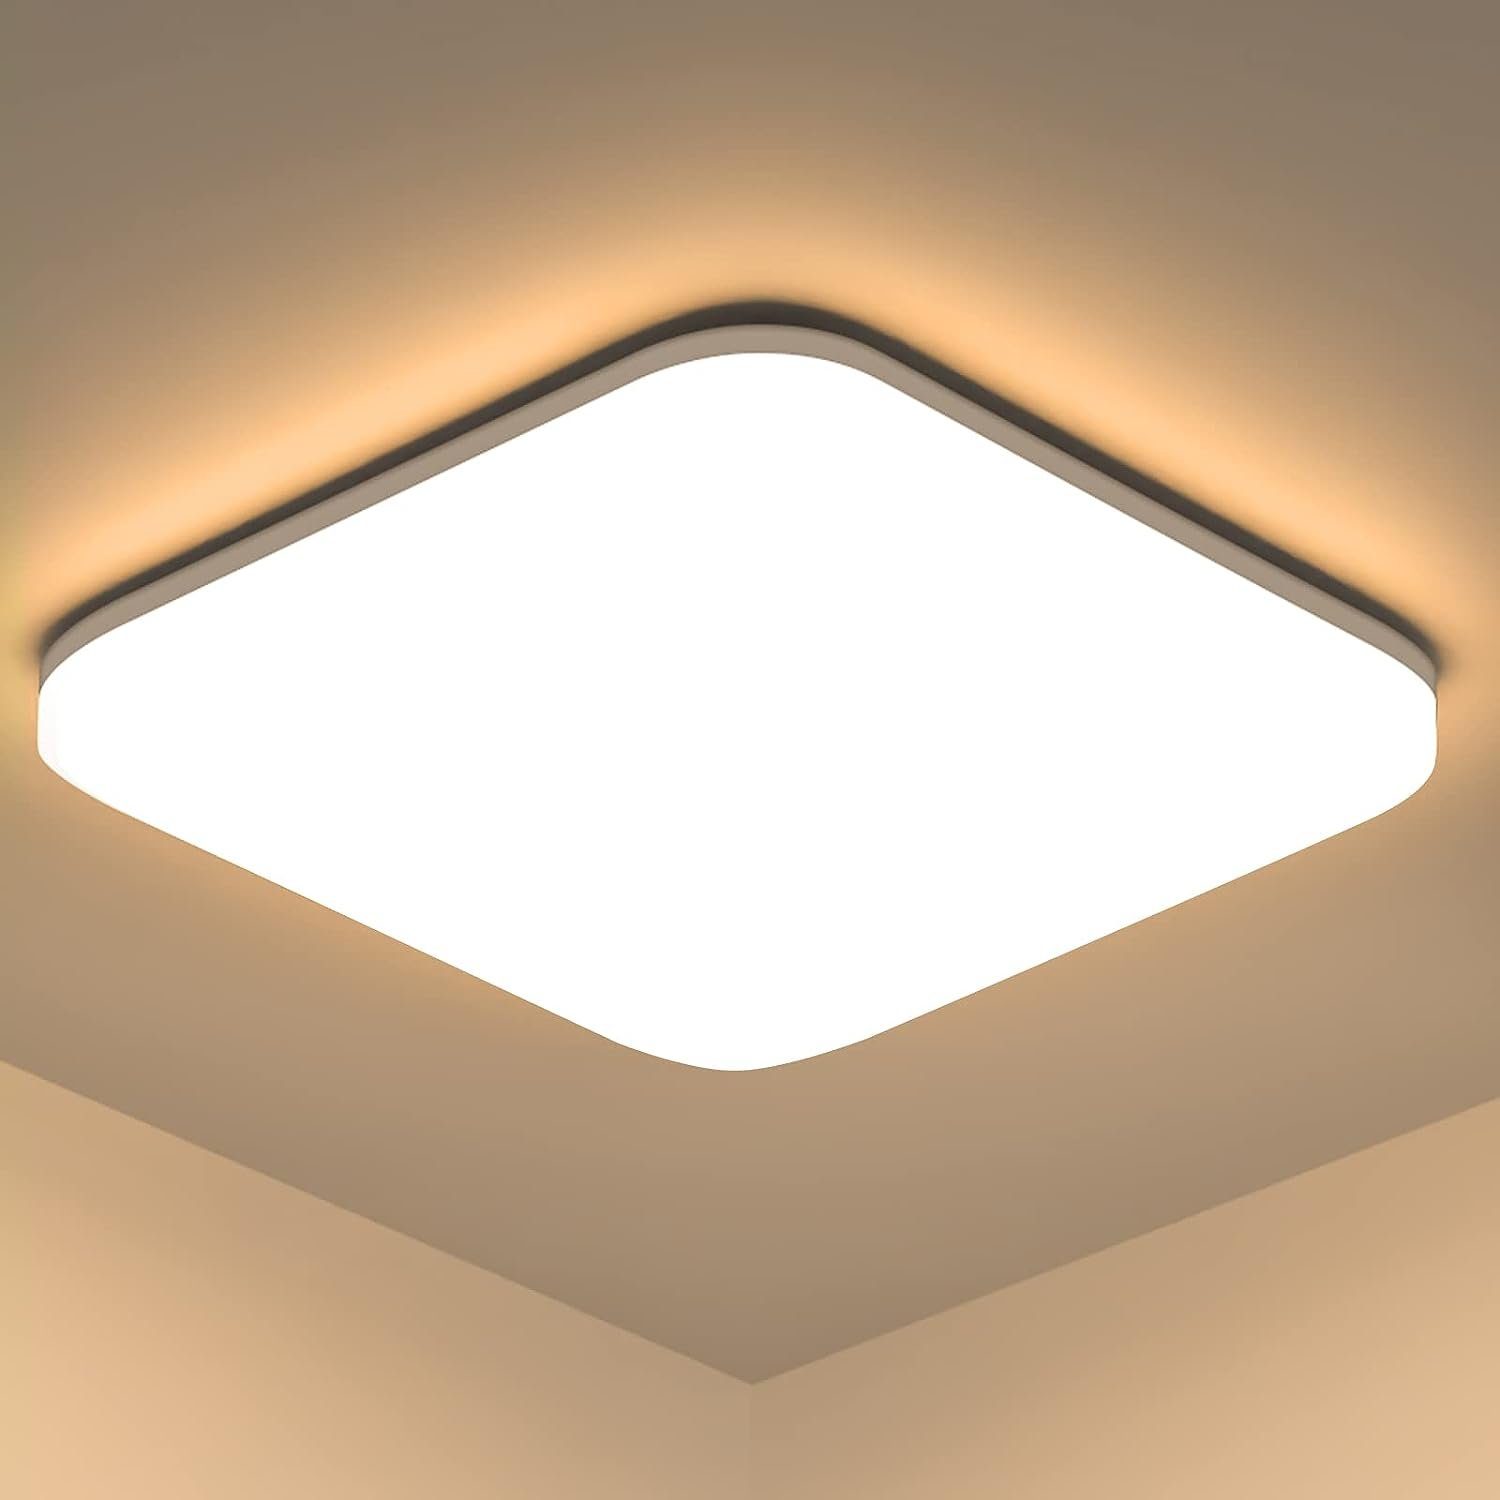 ZMH LED Deckenleuchte Deckenlampe IP54 Wasserfest Badezimmer Rund Badlampe Decke, LED fest integriert